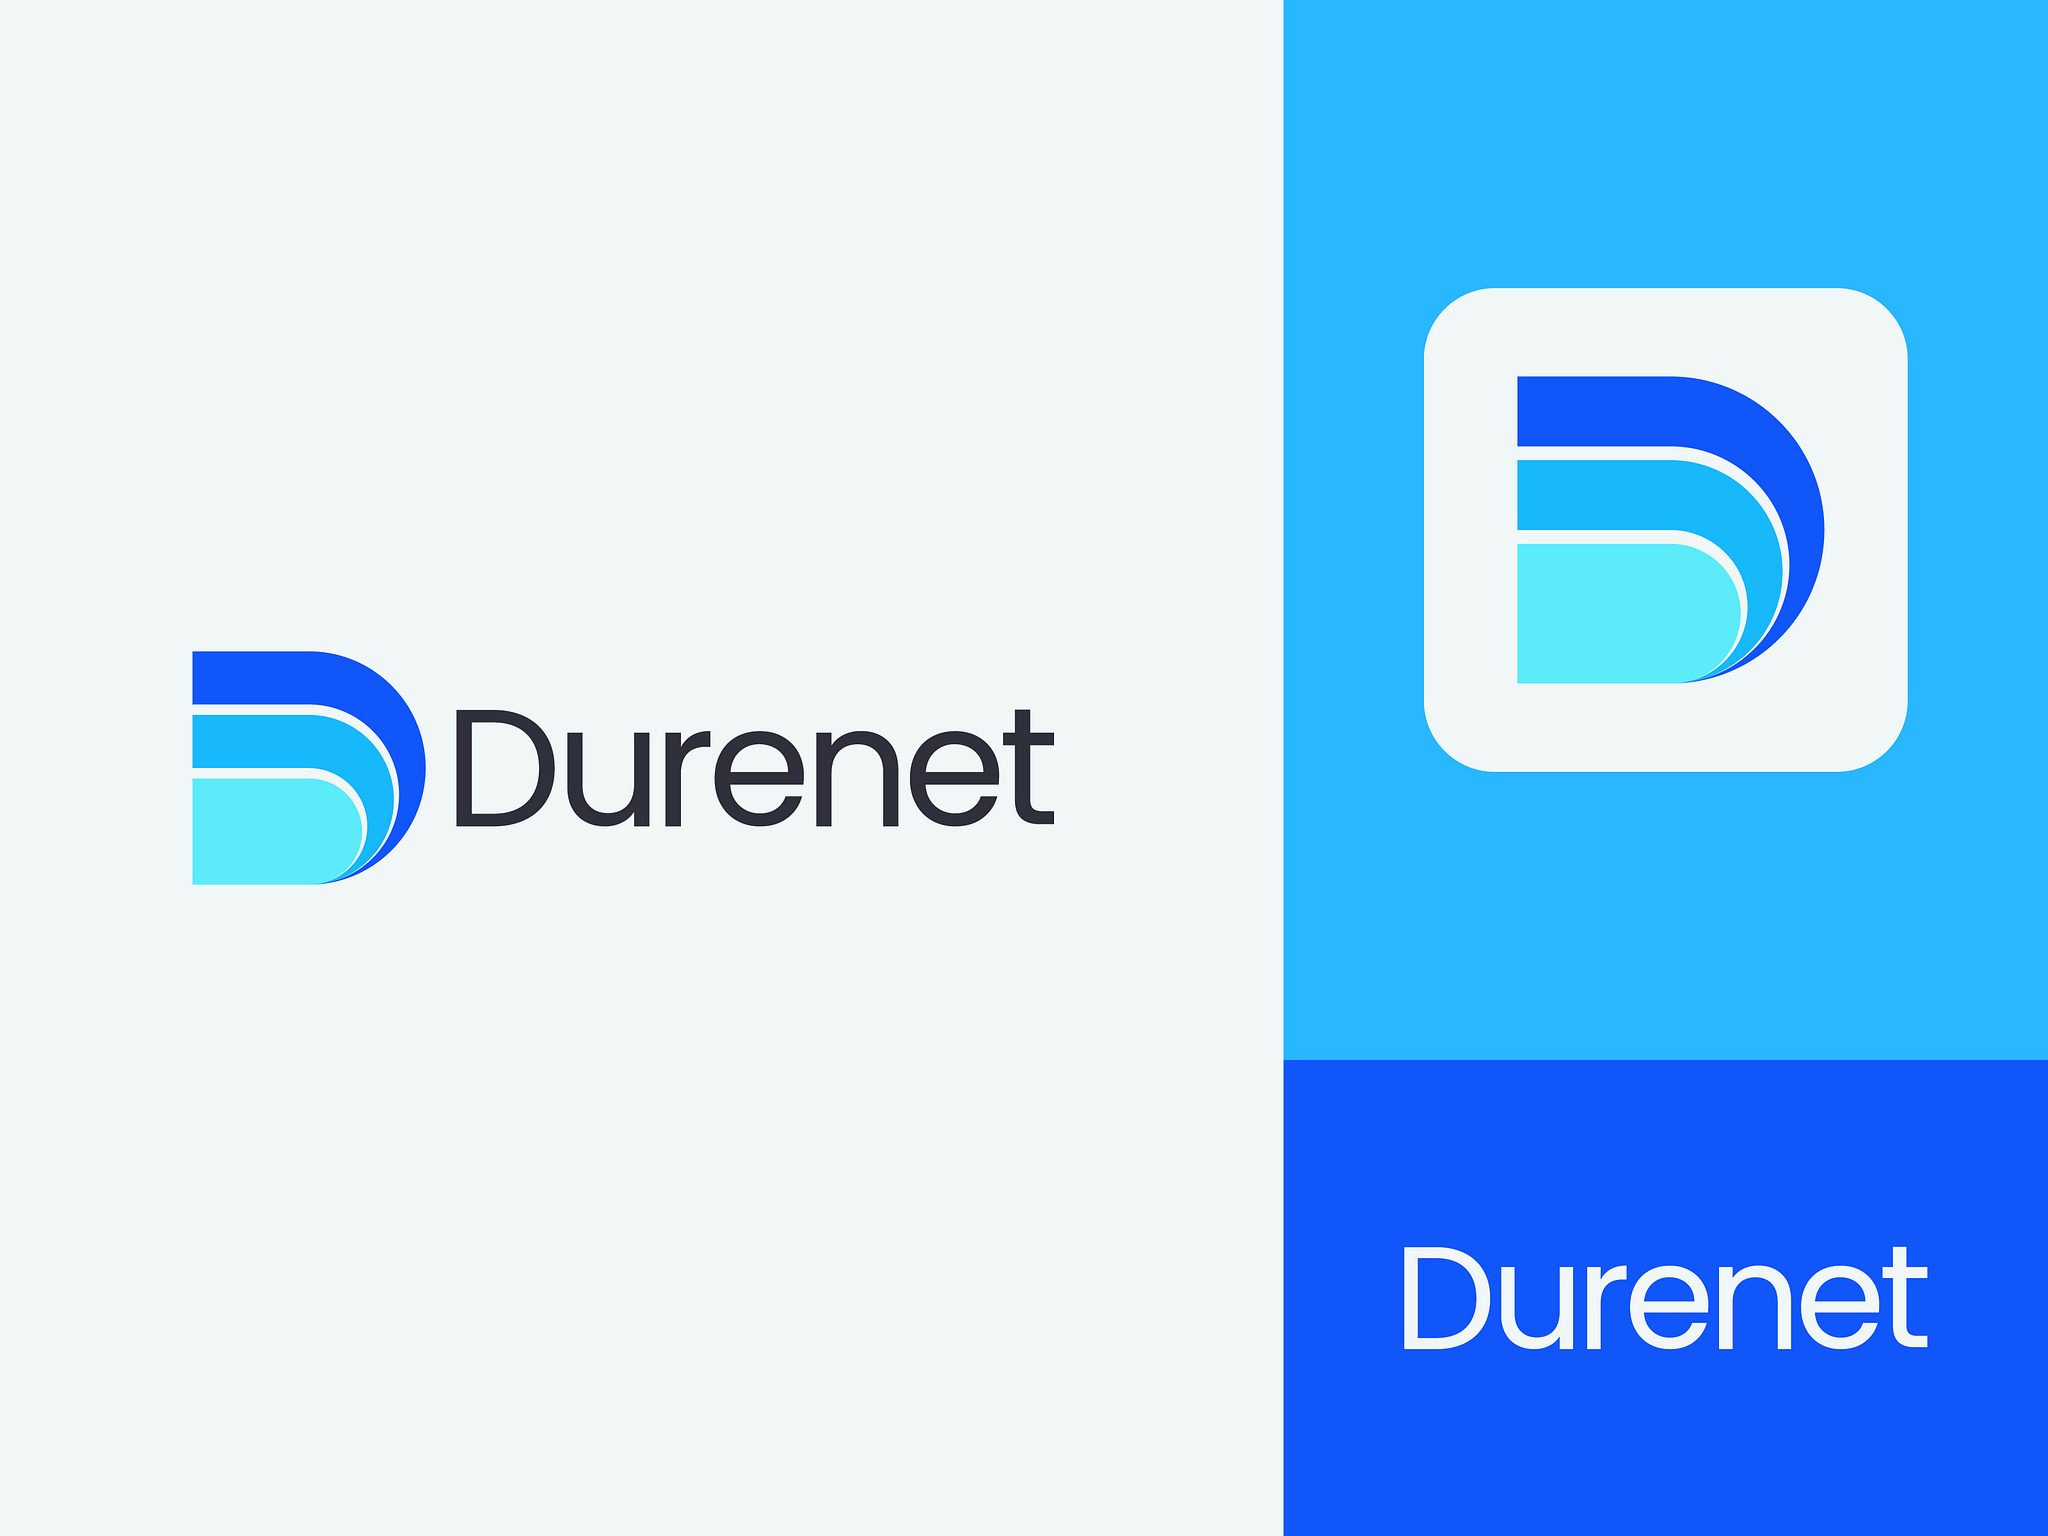 Durenet - D Lettermark, D Symbol, Modern Letter D Logo Design by MH ...